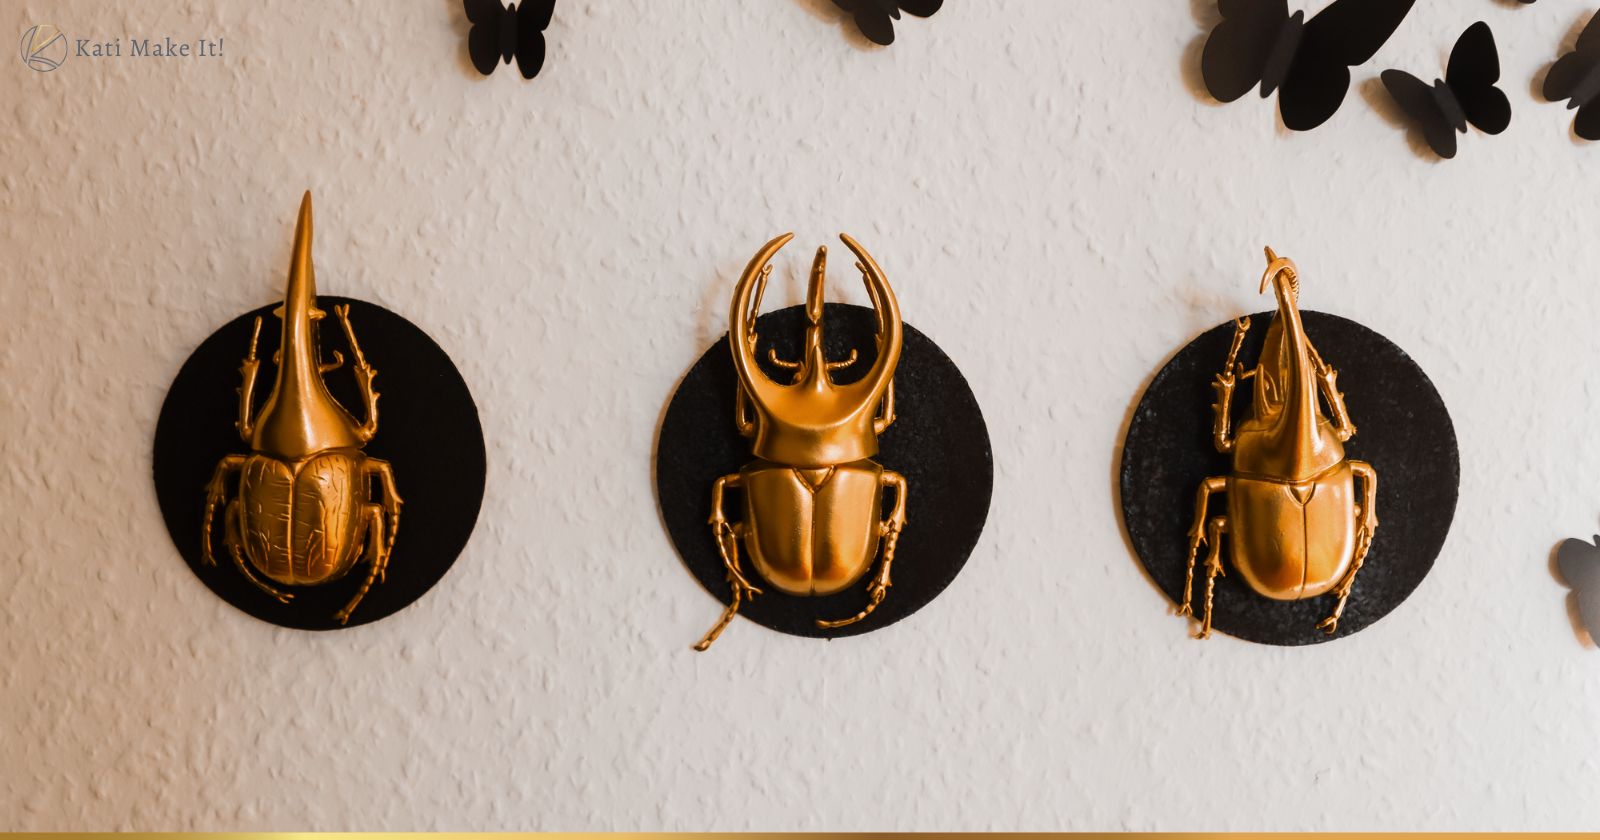 Verpasse deiner Deko zu Halloween einen Hauch von Eleganz mit dieser vergoldeten DIY Insekten-Galerie! Die perfekte Halloween Deko zum Einfach-Selber-Machen.